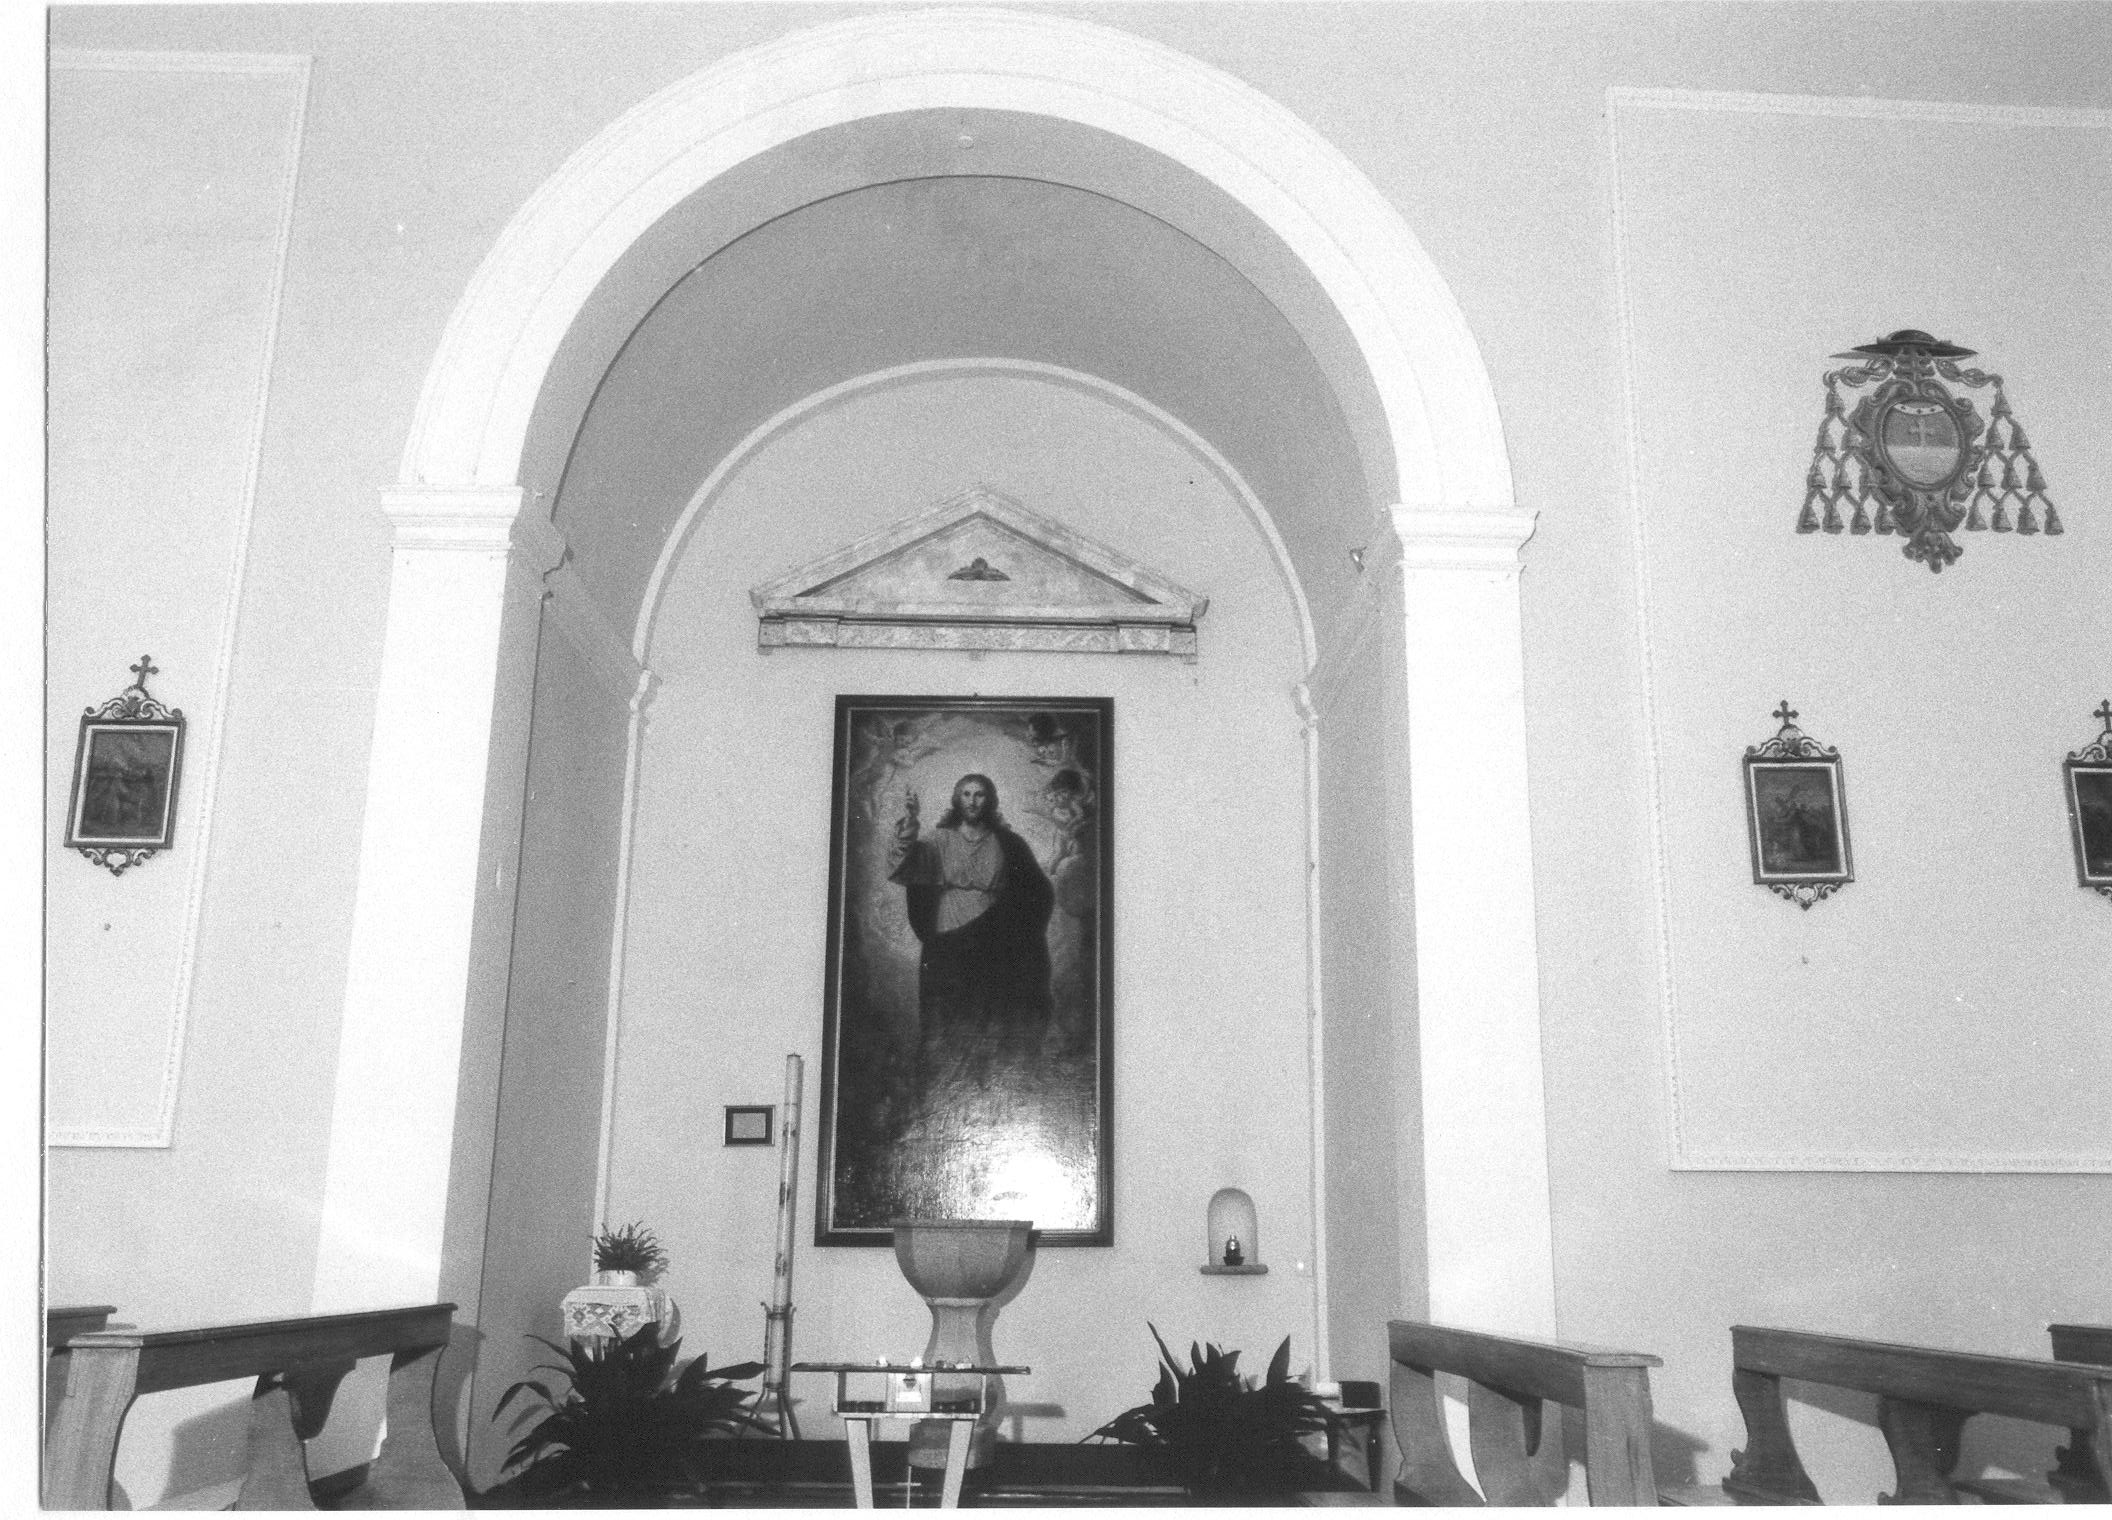 Chiesa di S. Giacomo Maggiore (chiesa, parrocchiale) - Bondeno (FE) 